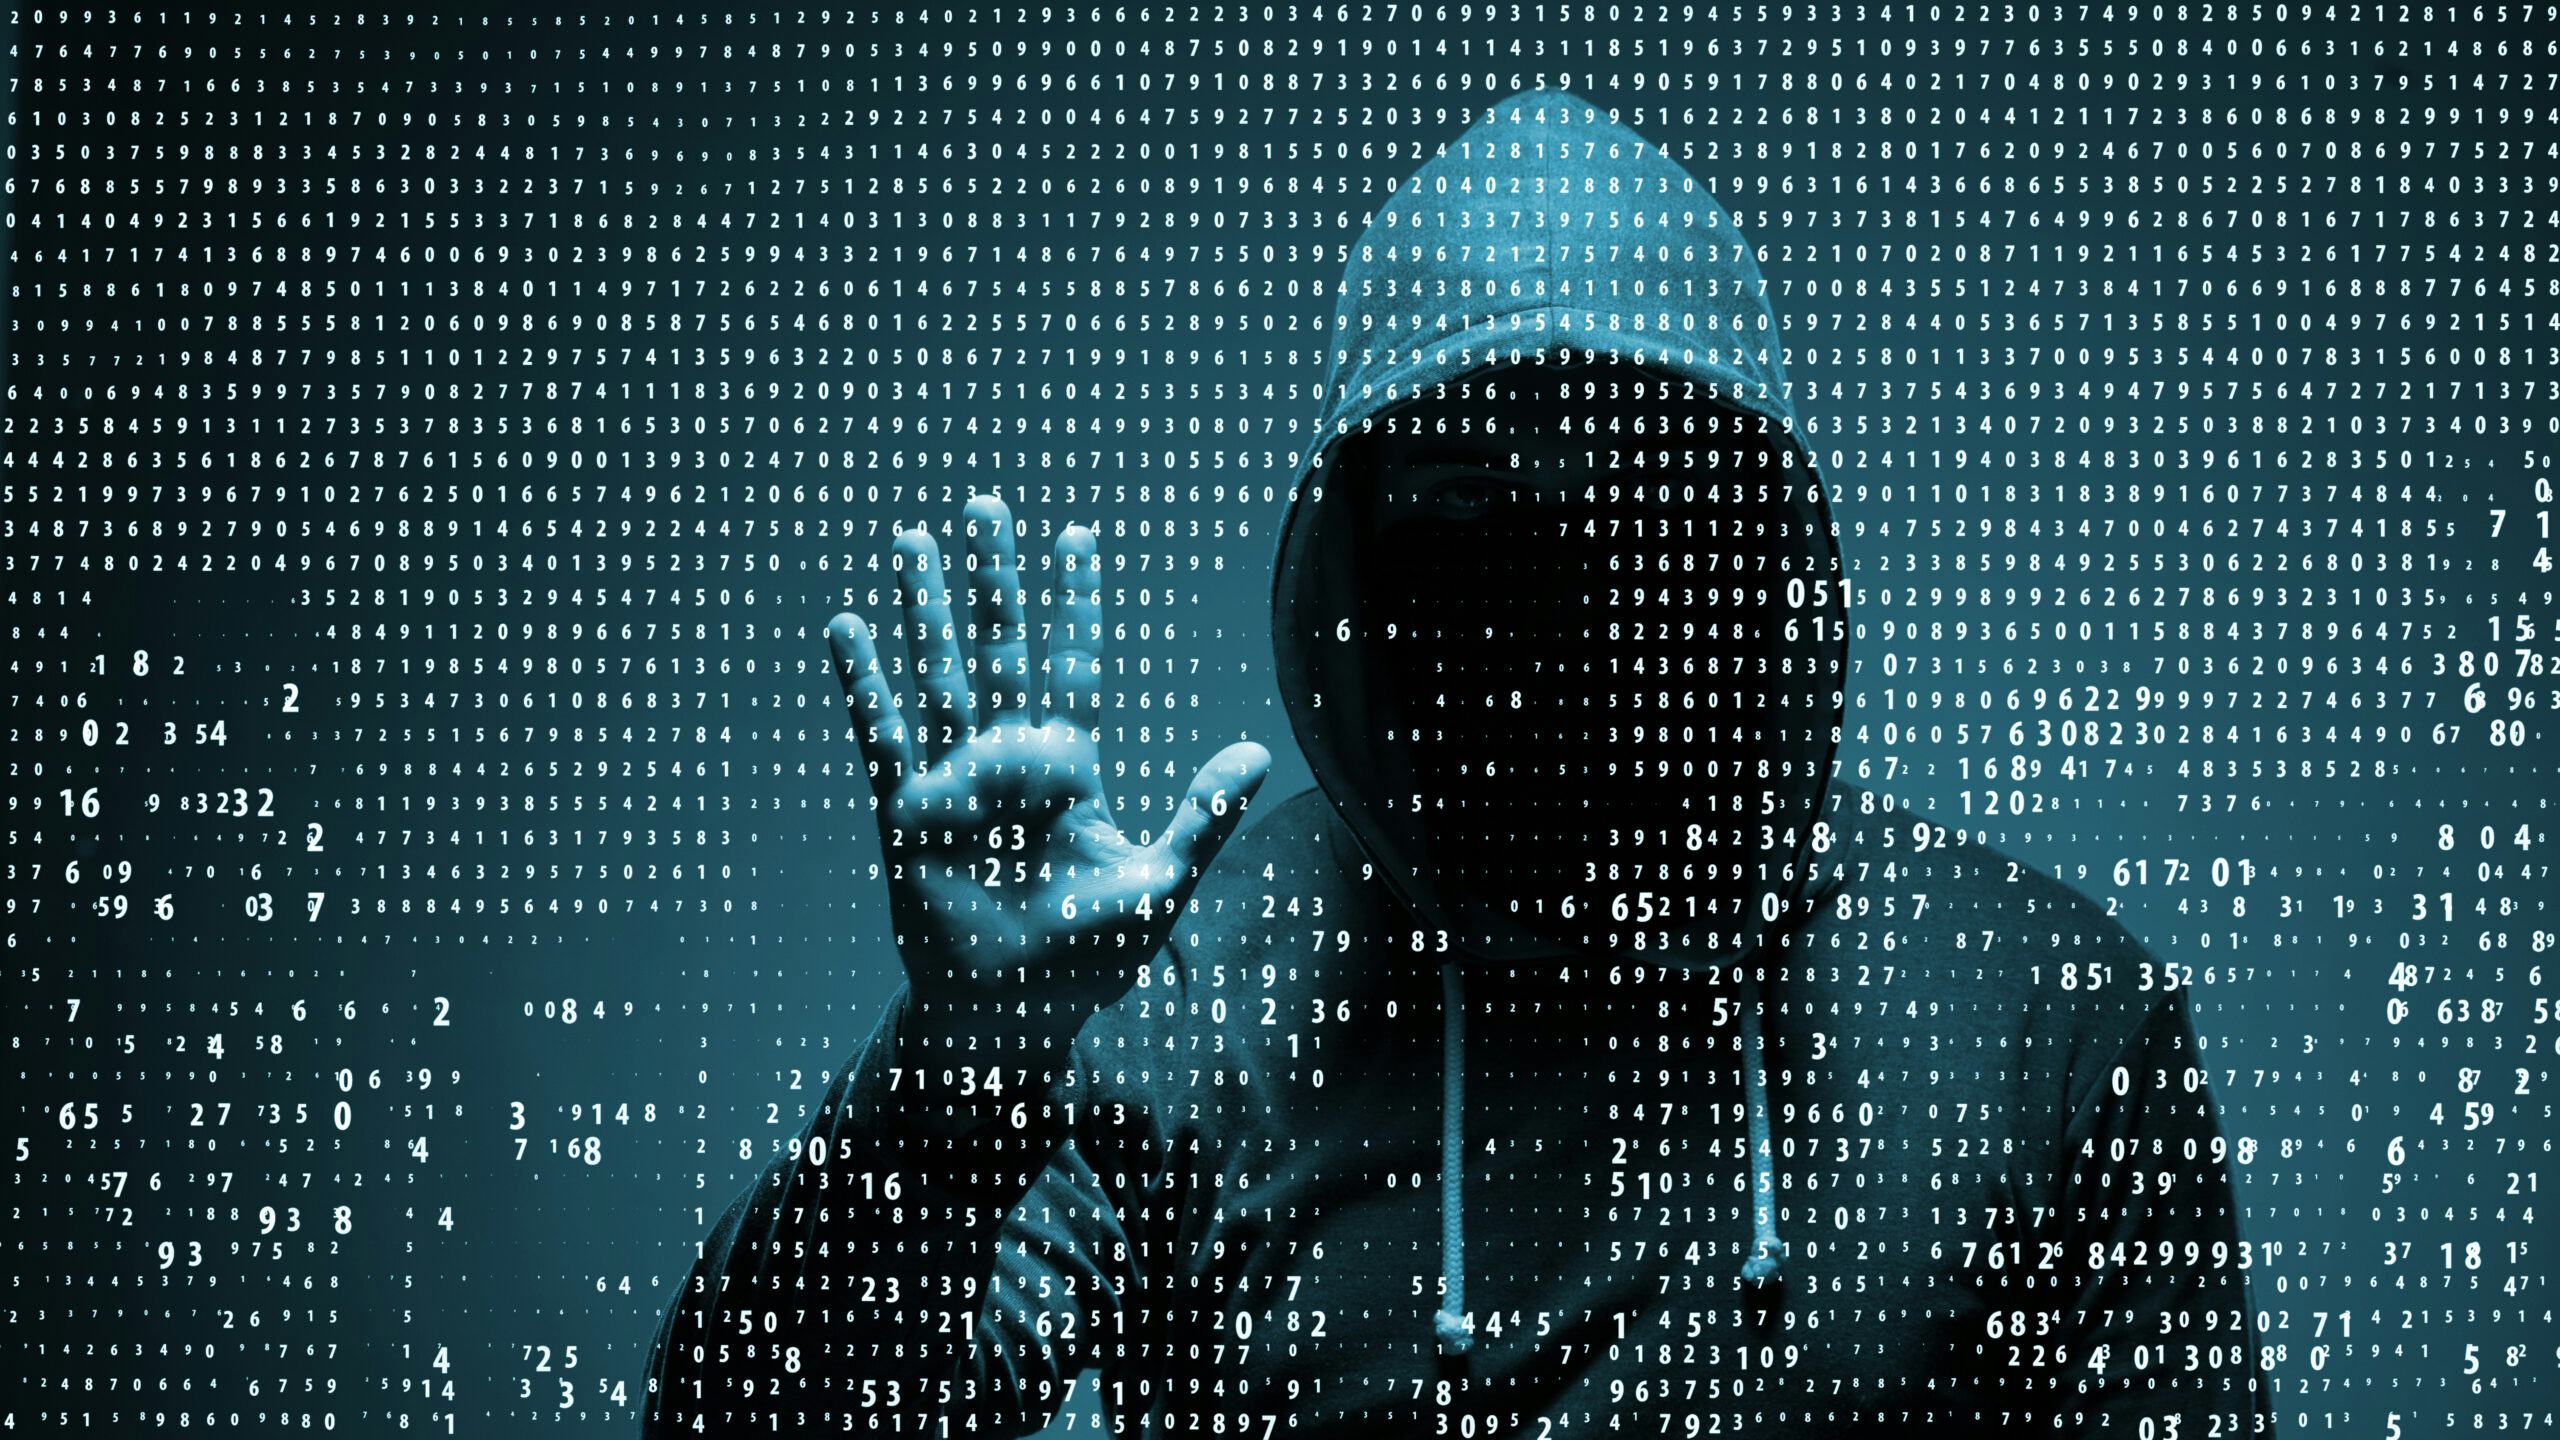 Afbeelding ter illustratie van cybercrime. Foto: Shutterstock